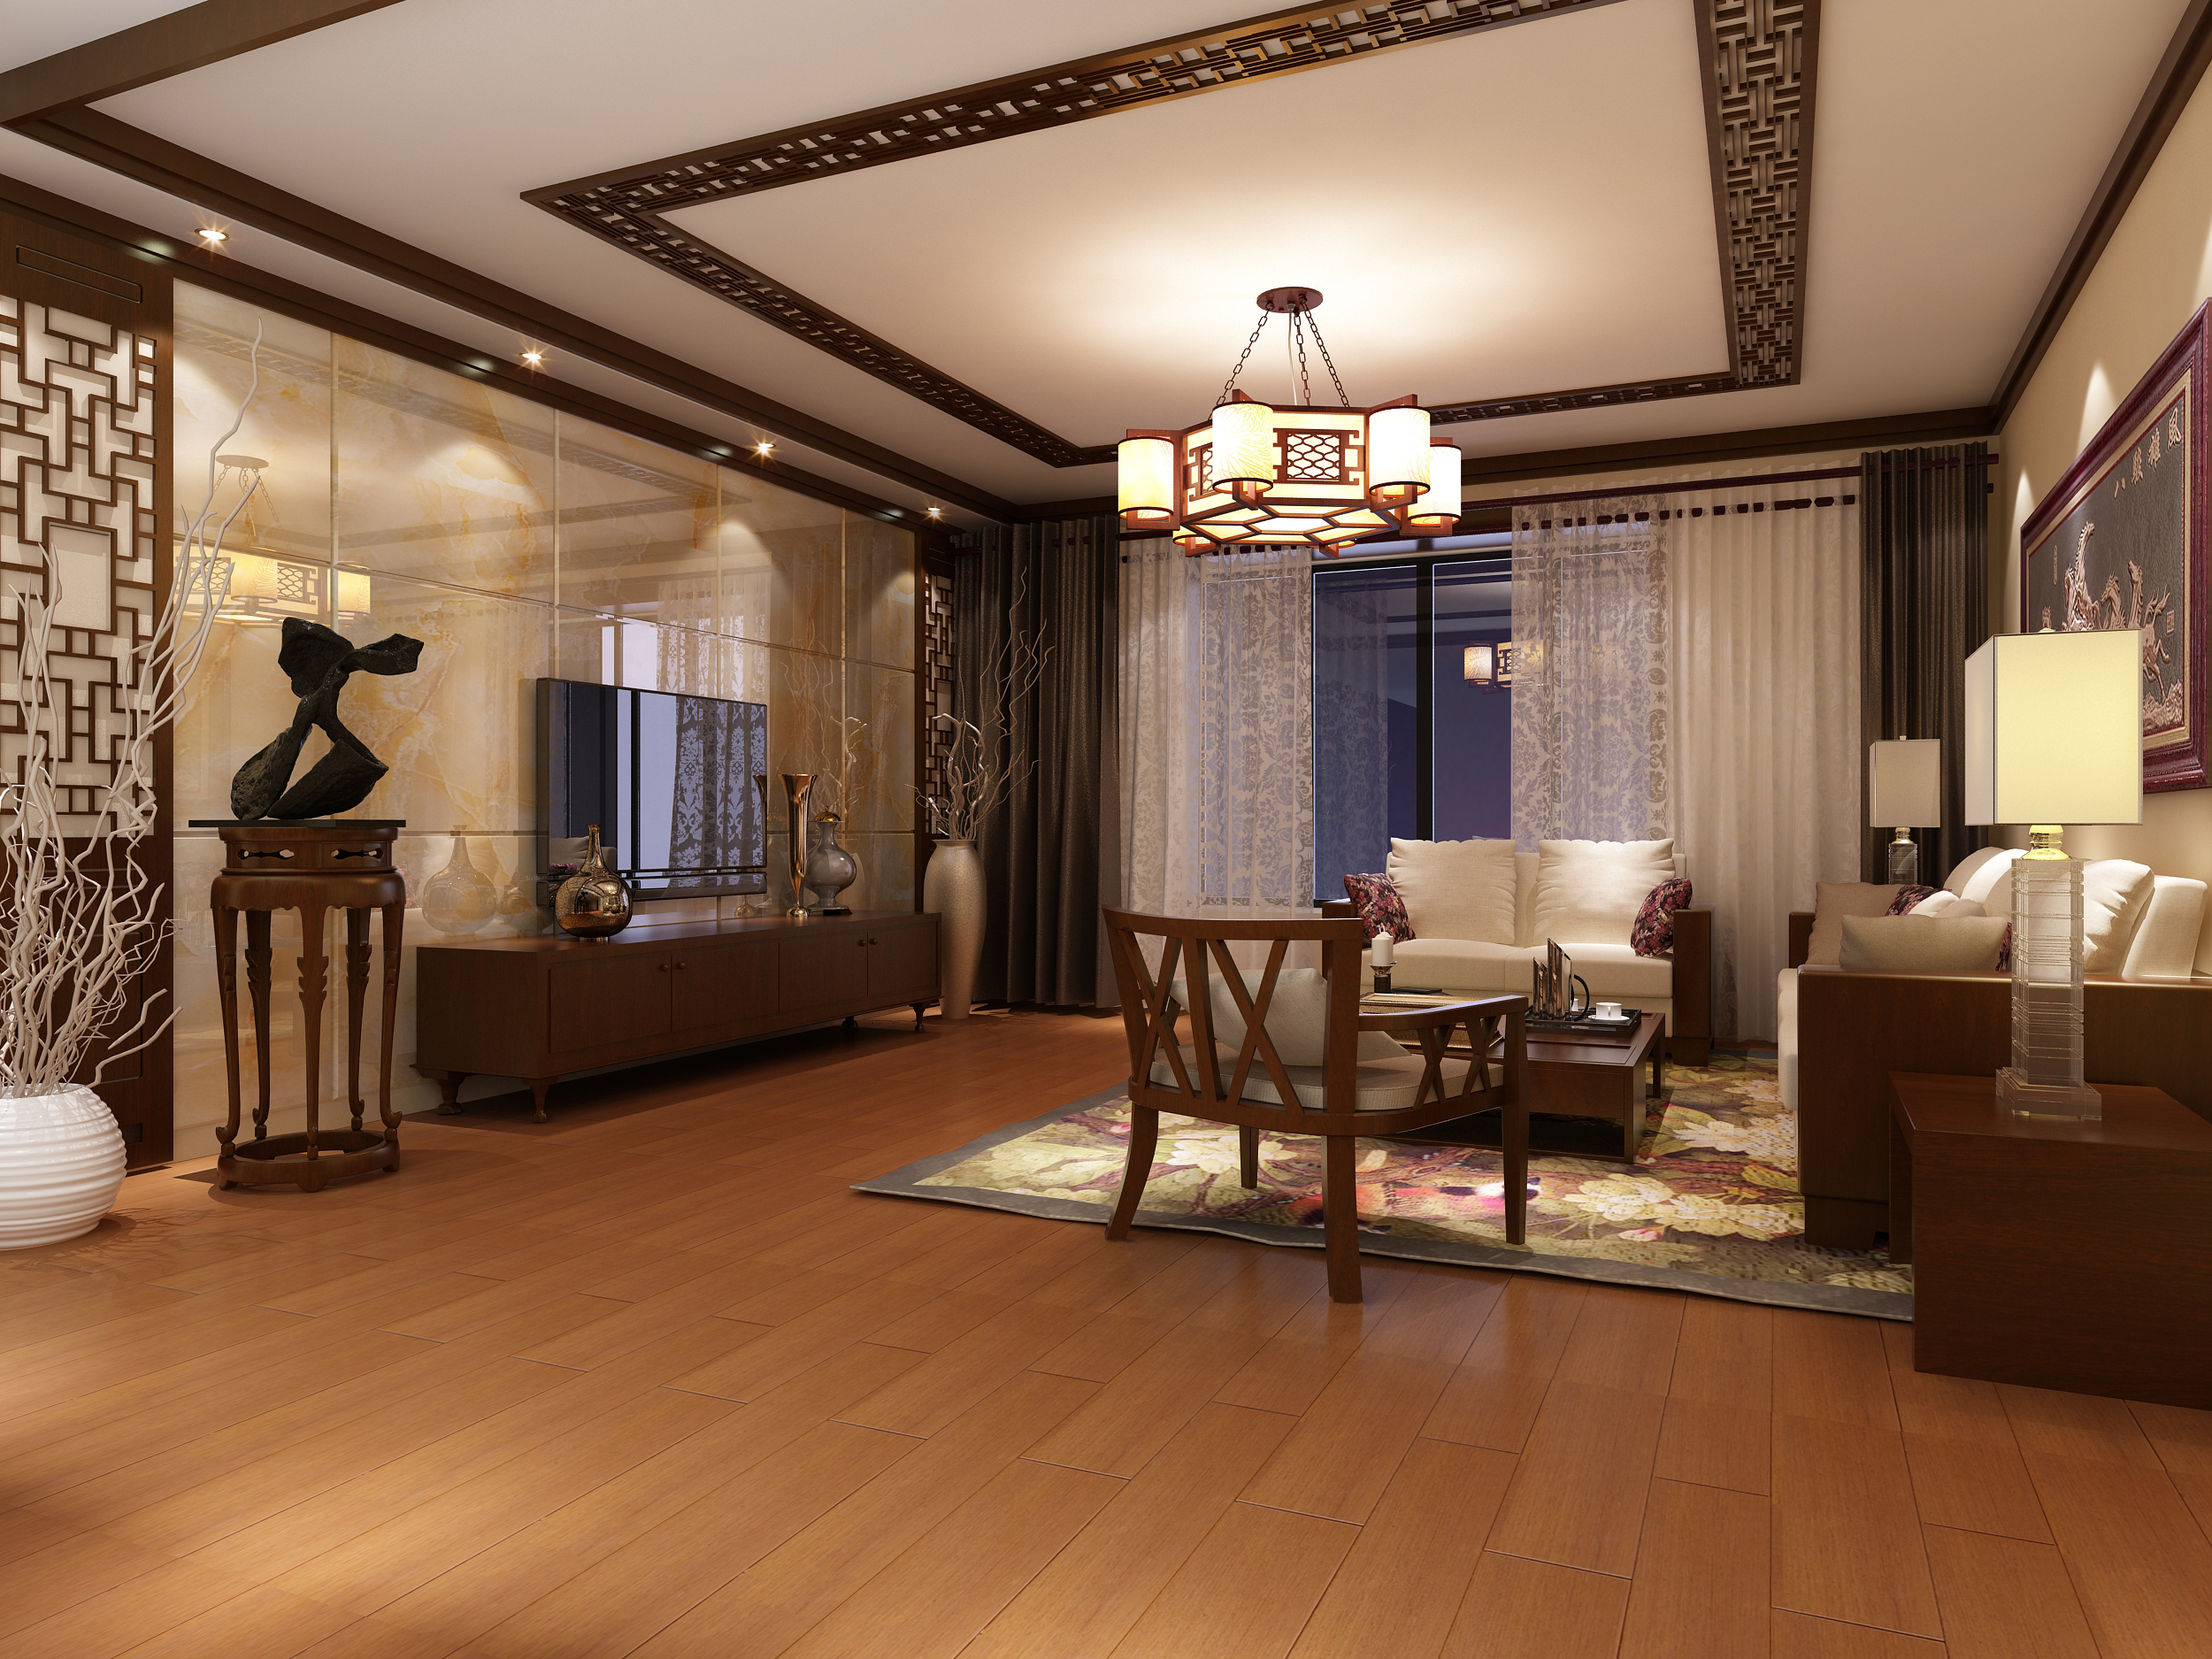 中式 四居室 别致 中年人 客厅 客厅图片来自实创小莹在唯美新中式四